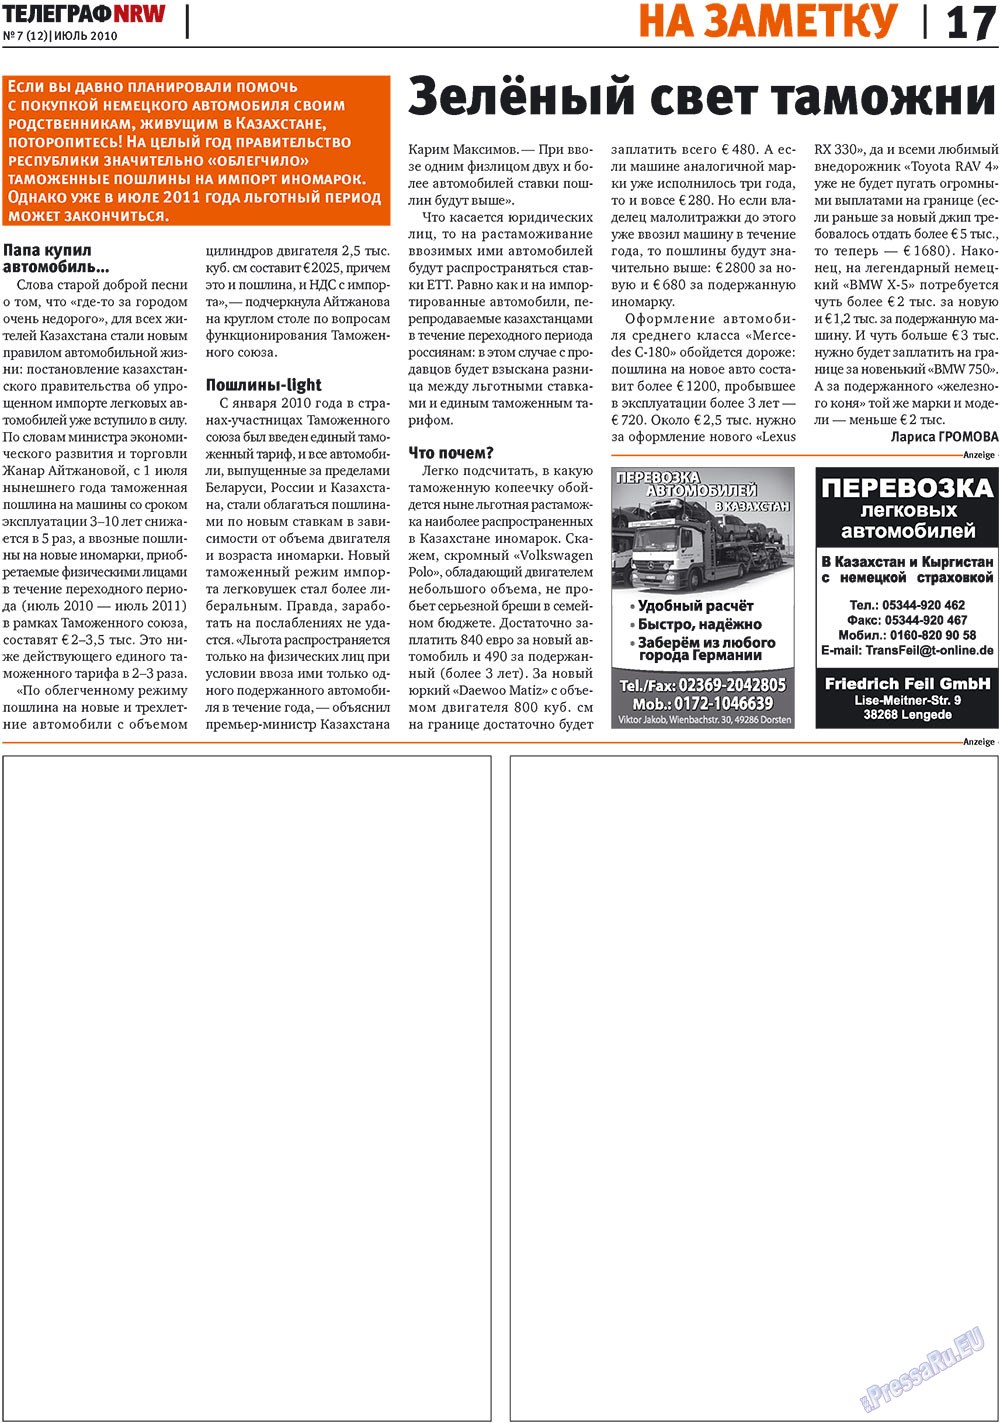 Телеграф NRW (газета). 2010 год, номер 7, стр. 17